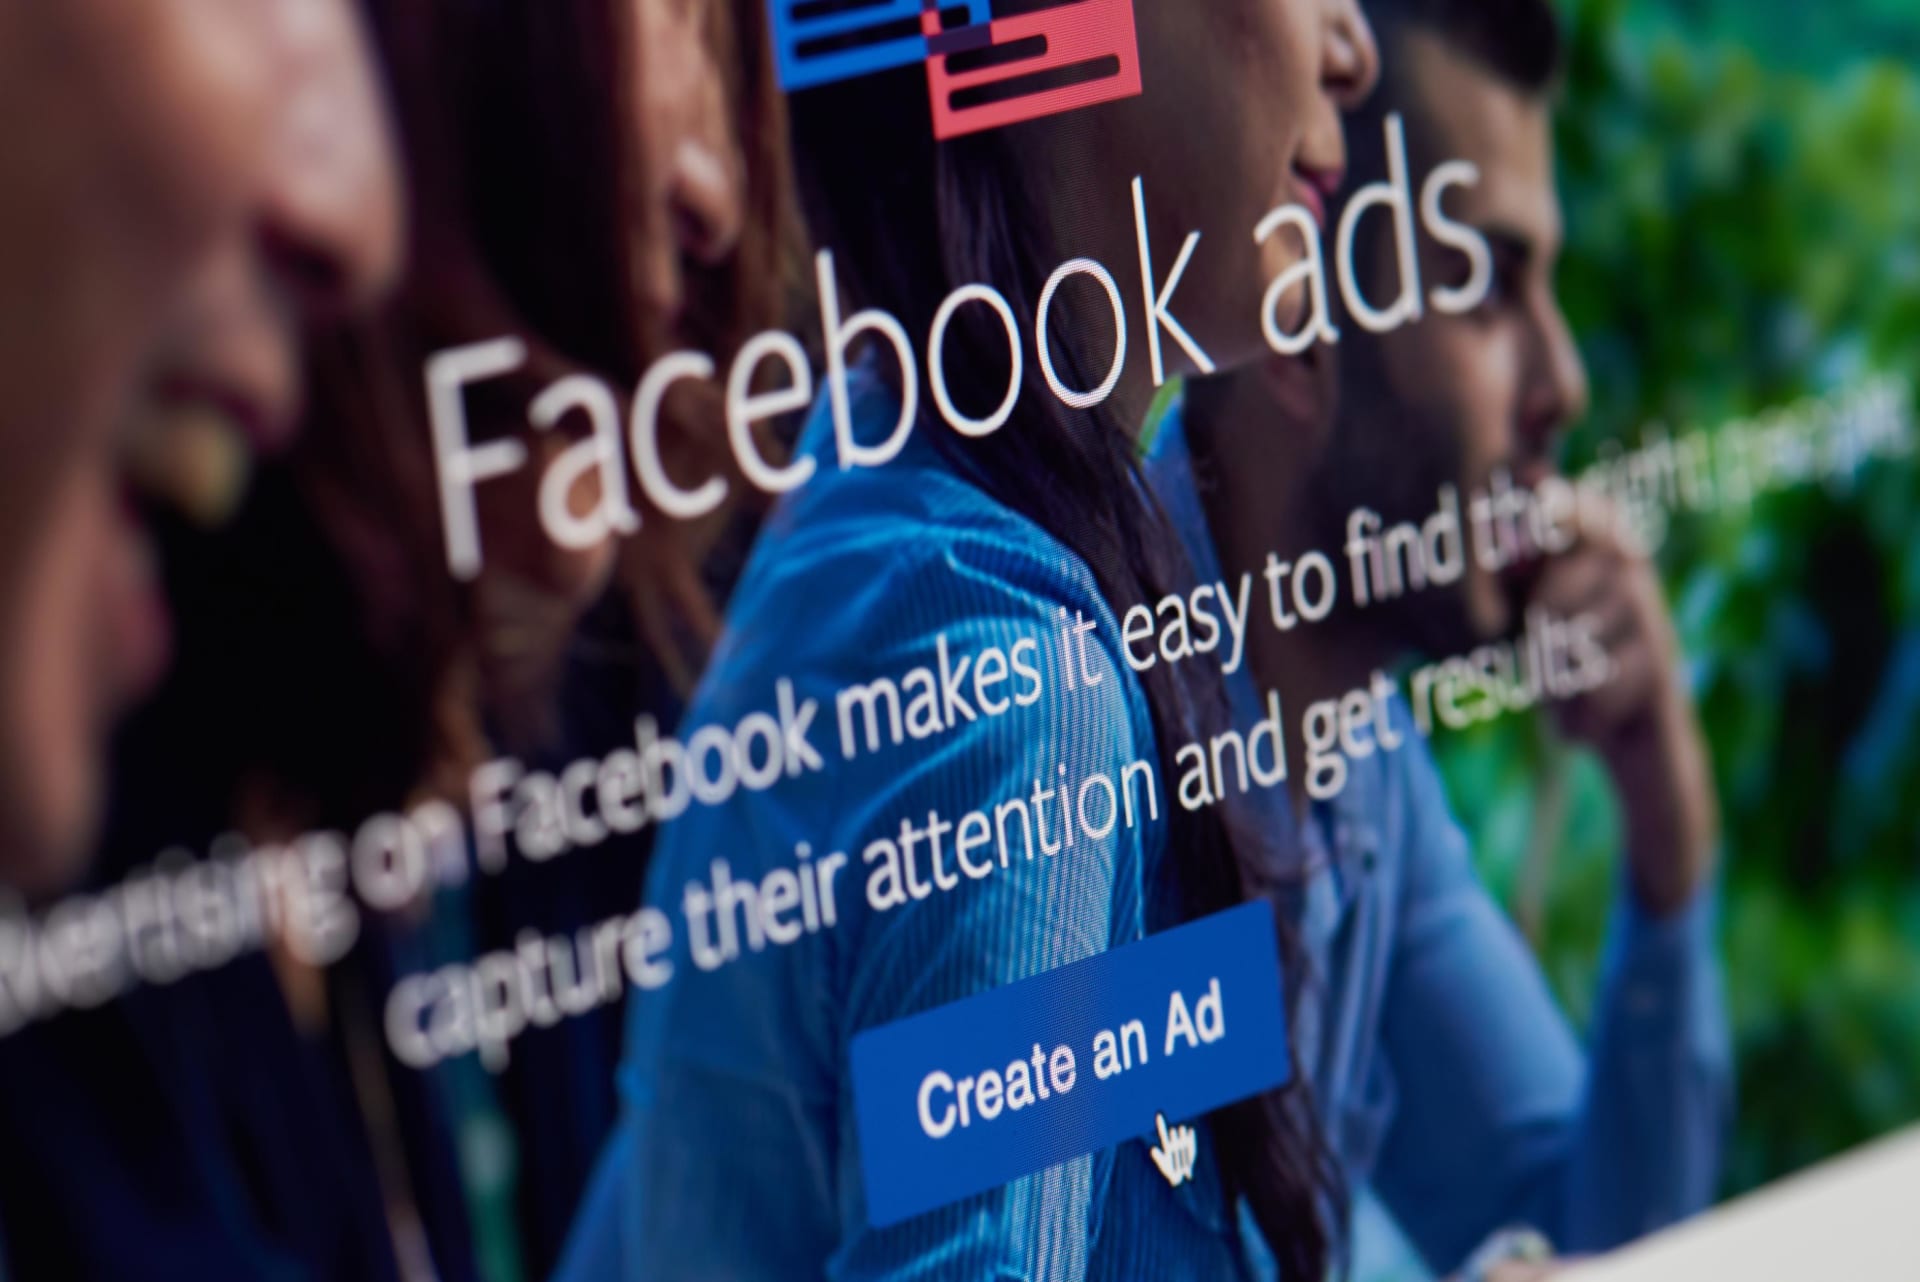 تهدد أعمالها الإعلانية.. "فيسبوك" تنتقد "آبل" بعد تغييرات الخصوصية